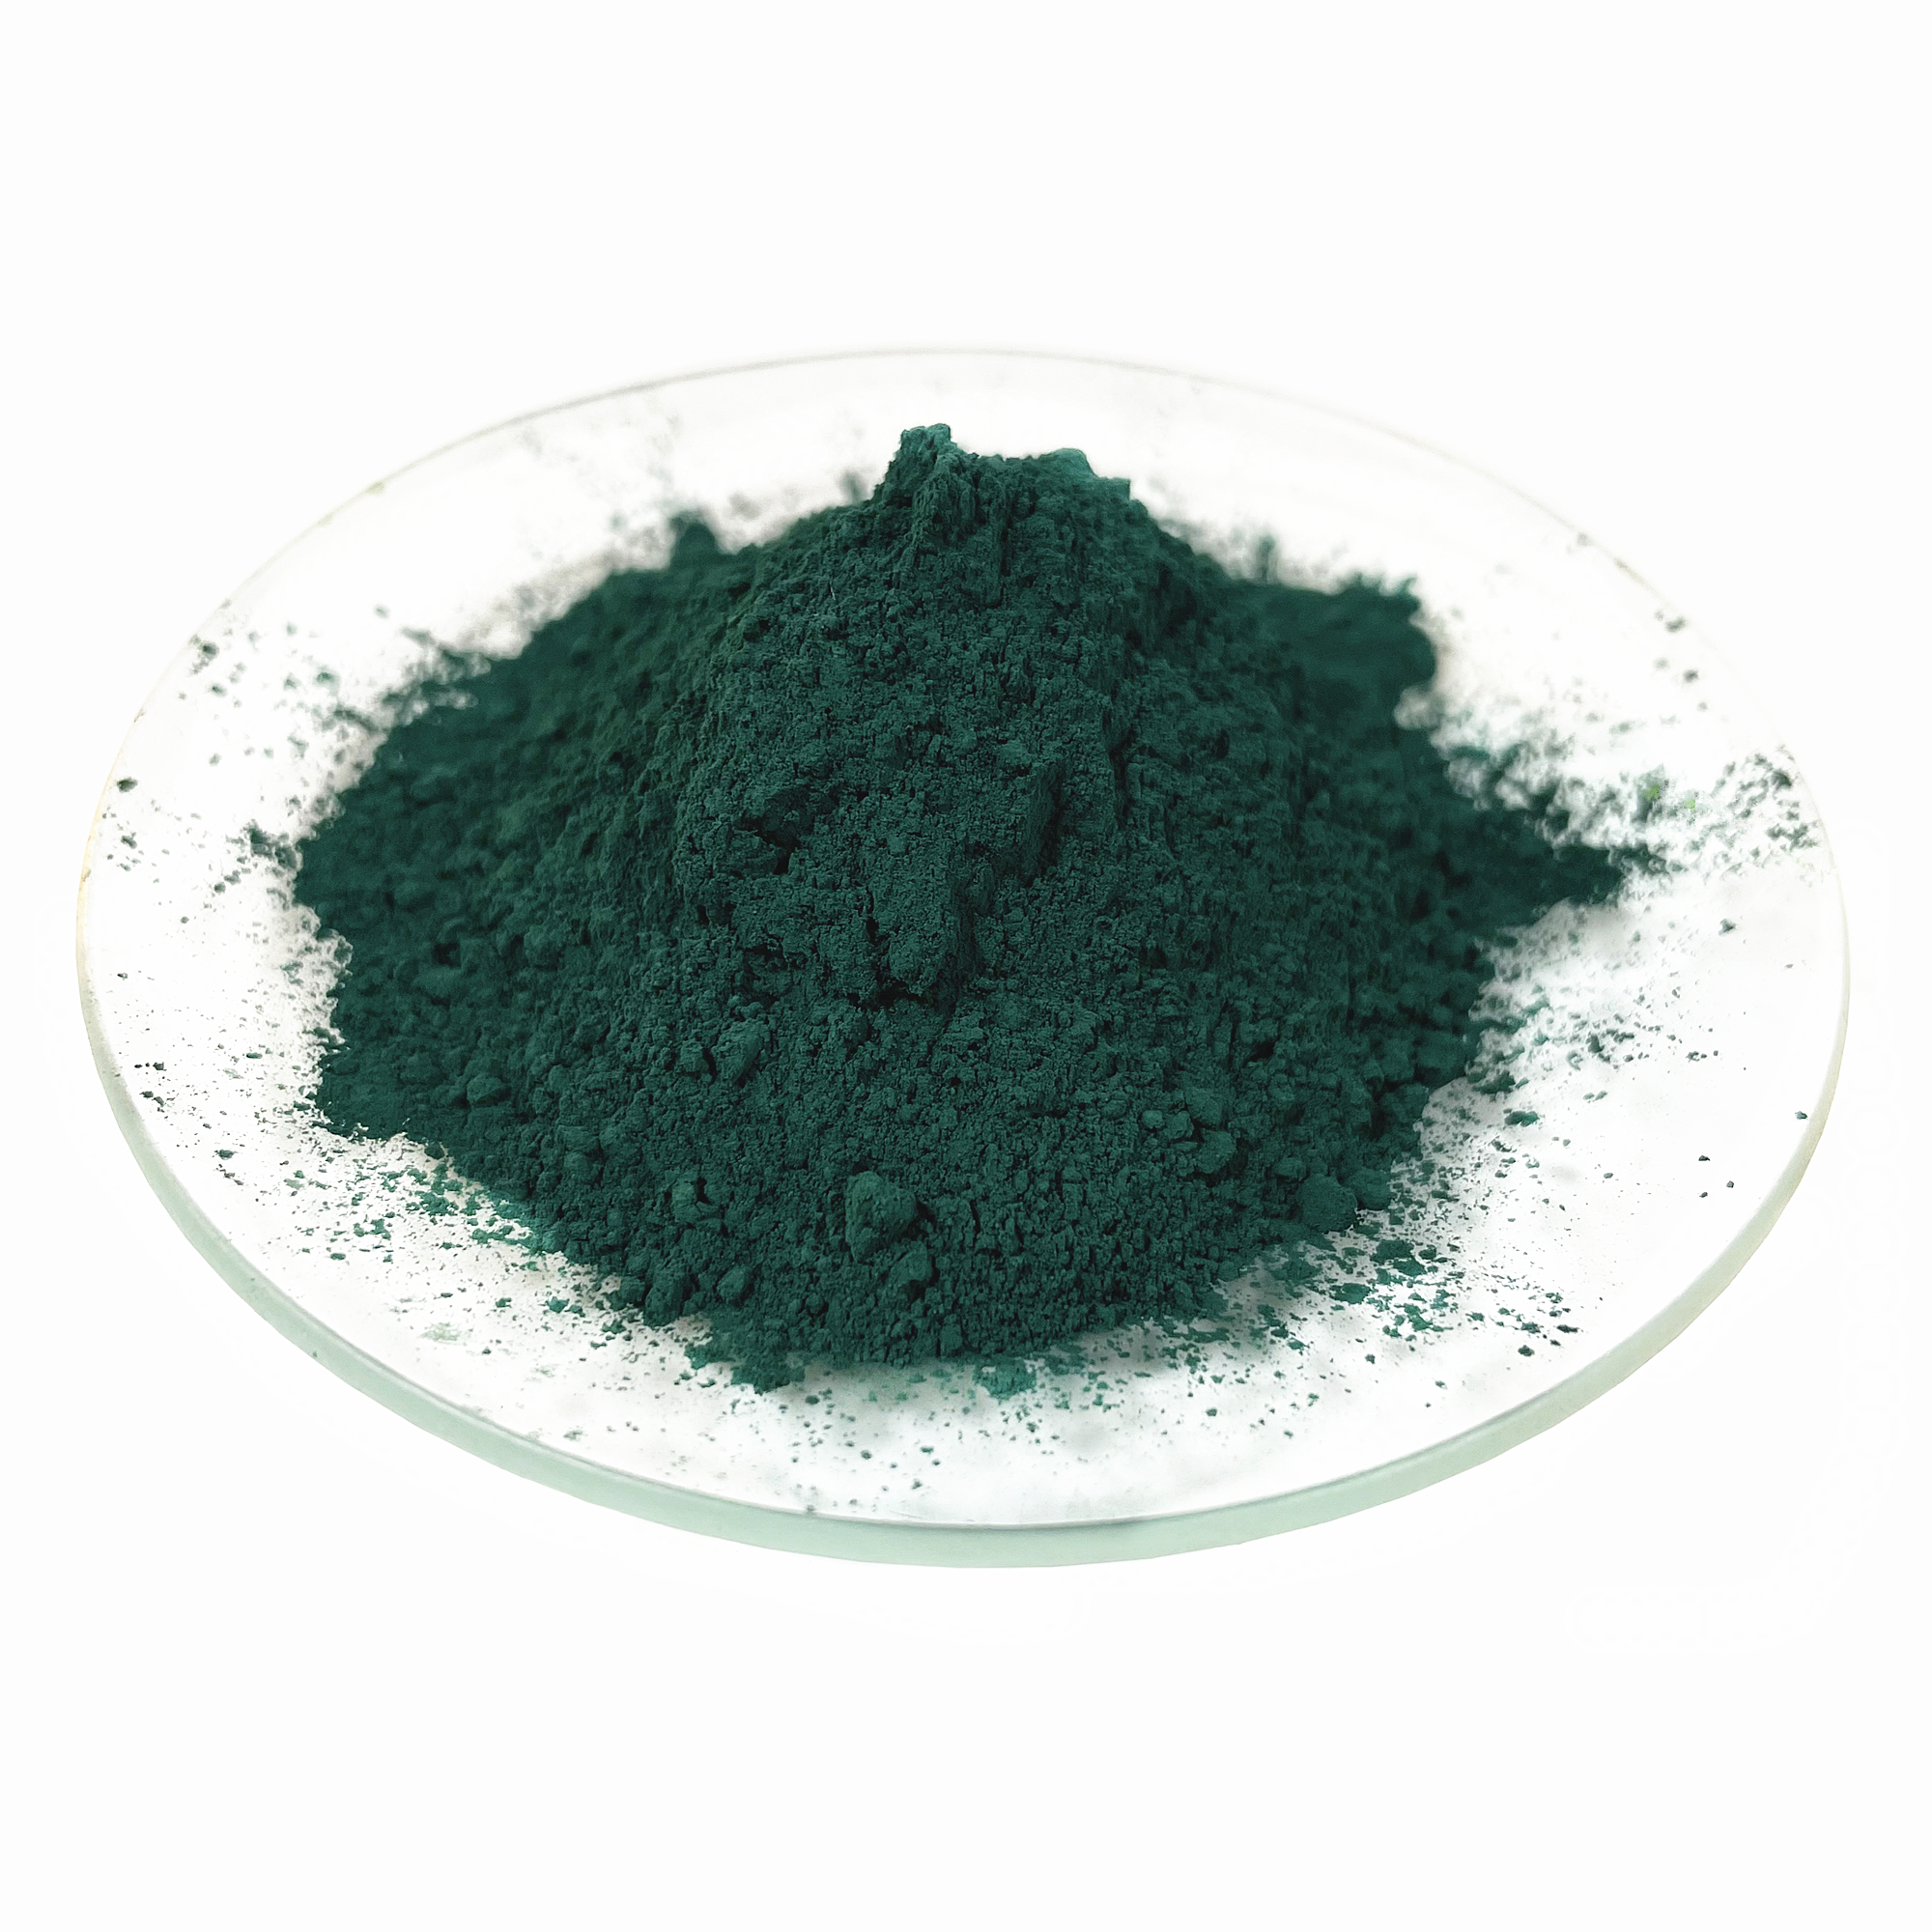 ราคาเม็ดสีเหล็กออกไซด์ Fe2O3 สีเขียวต่อตันสำหรับการก่อสร้าง